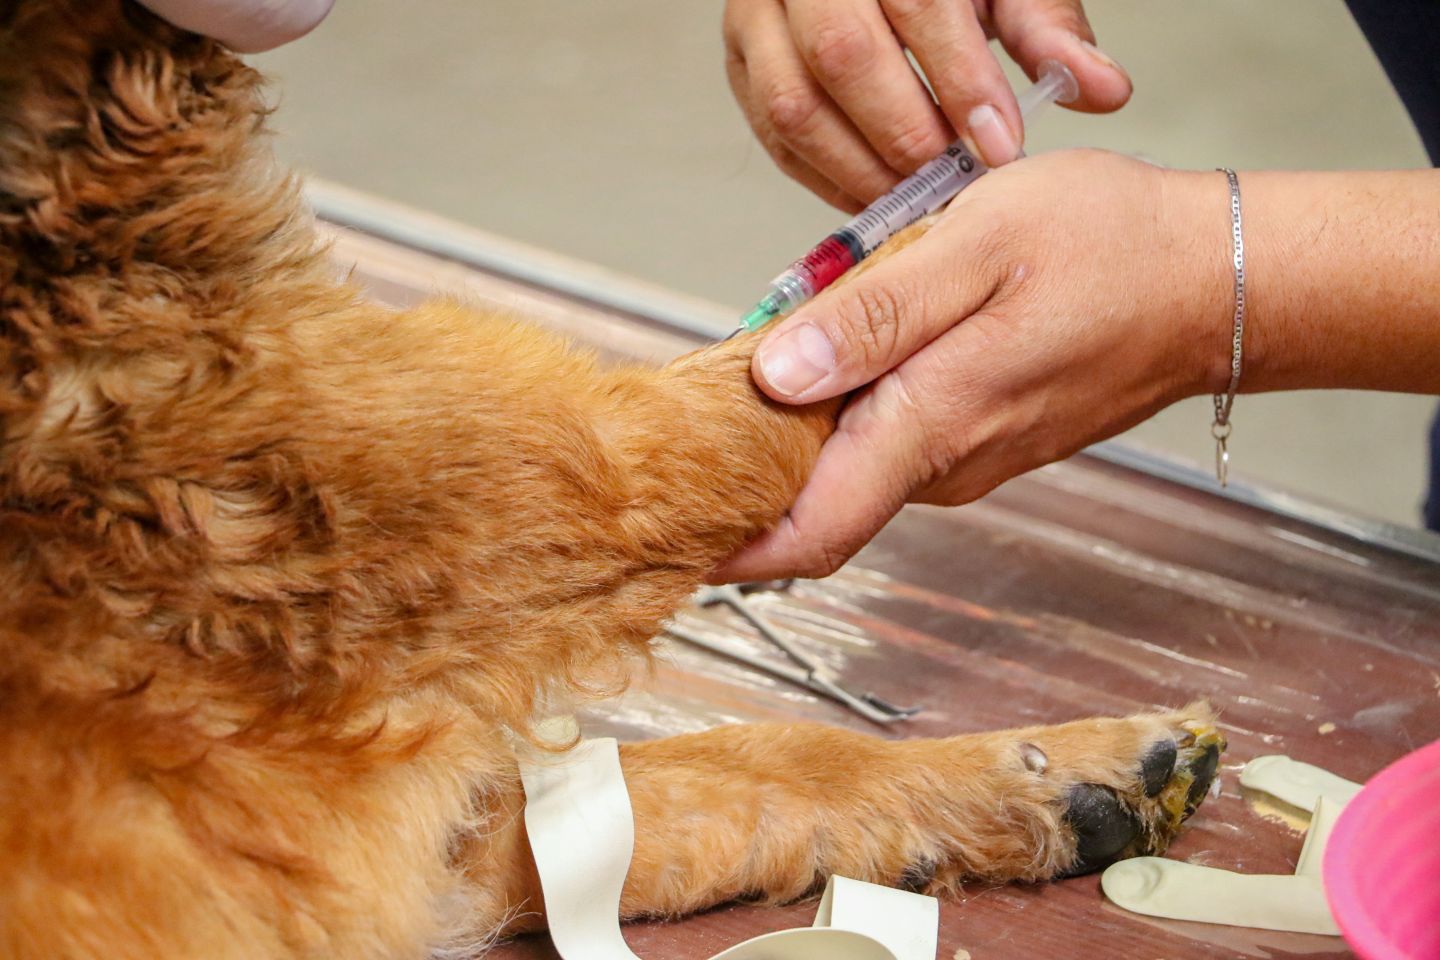 
Fomentamos el bienestar animal con programa de esterilizaciones caninas y felinas
